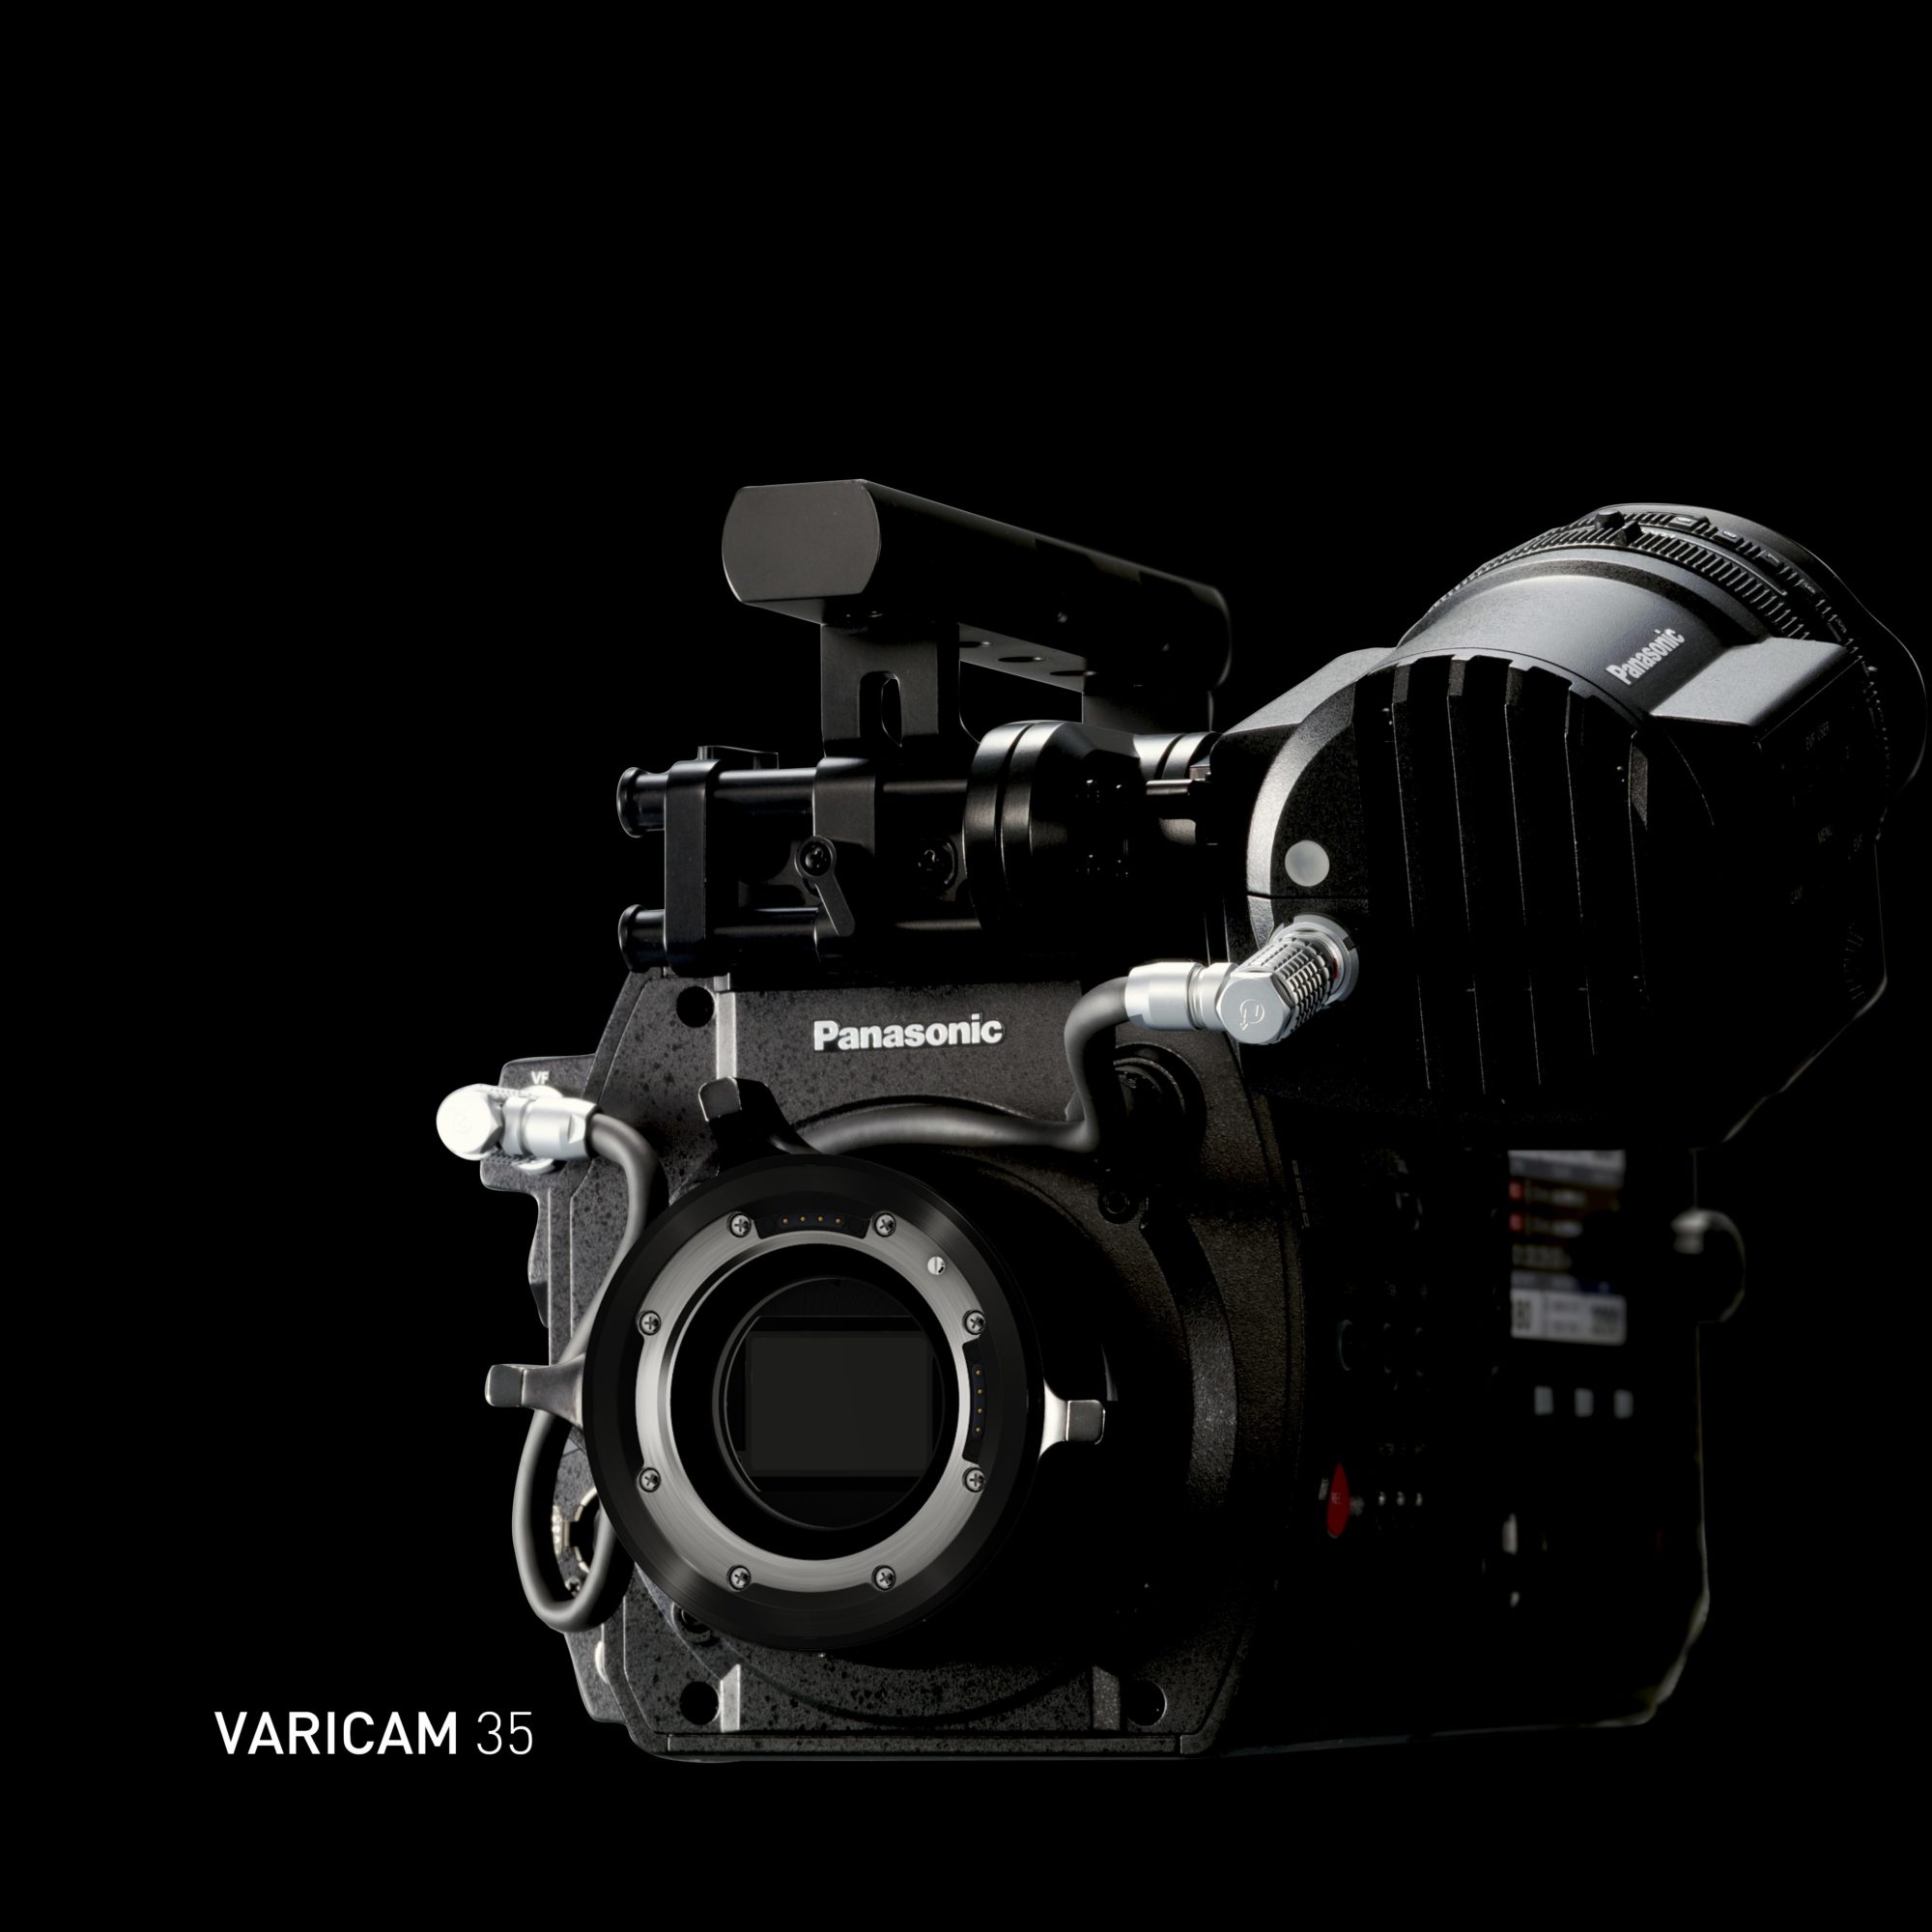 Varicam 35 Panasonic